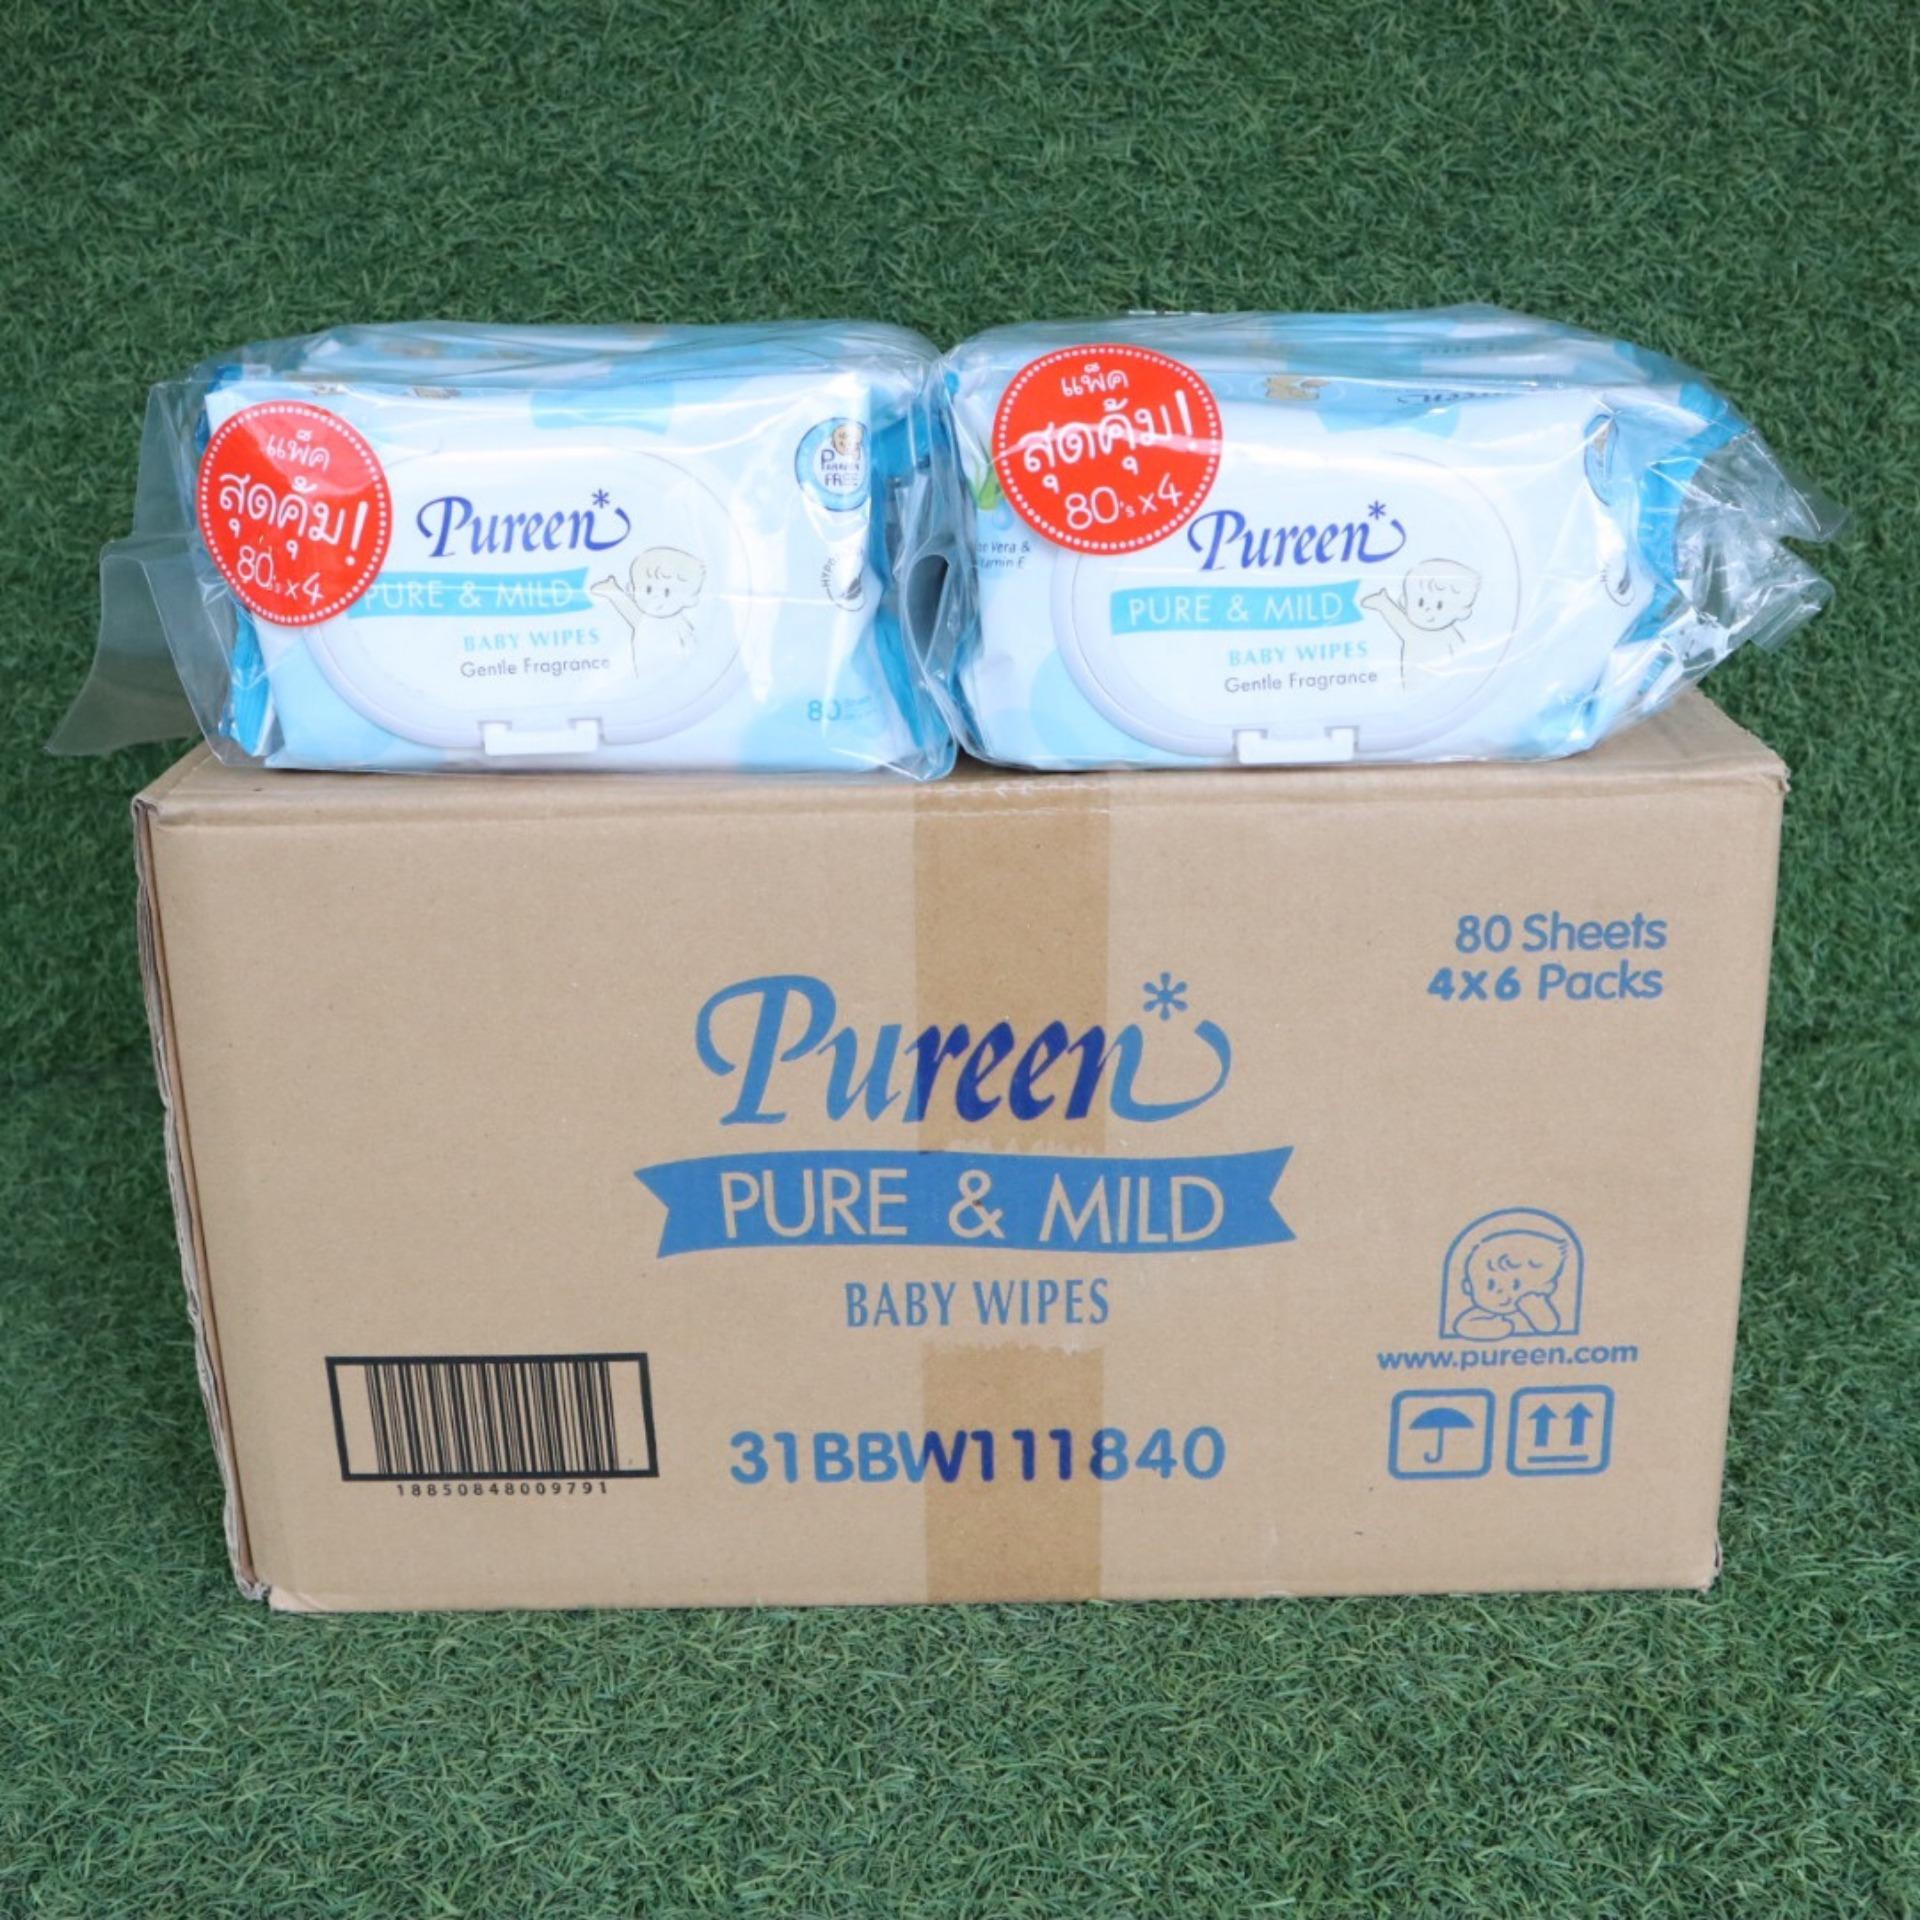 โปรโมชั่น ขายยกลัง Pureen Baby Wipes ผ้าเช็ดทำความสะอาด สูตร Pur & Mild 80 แผ่น ( แพ็ค 4 x 6 ) สีฟ้า